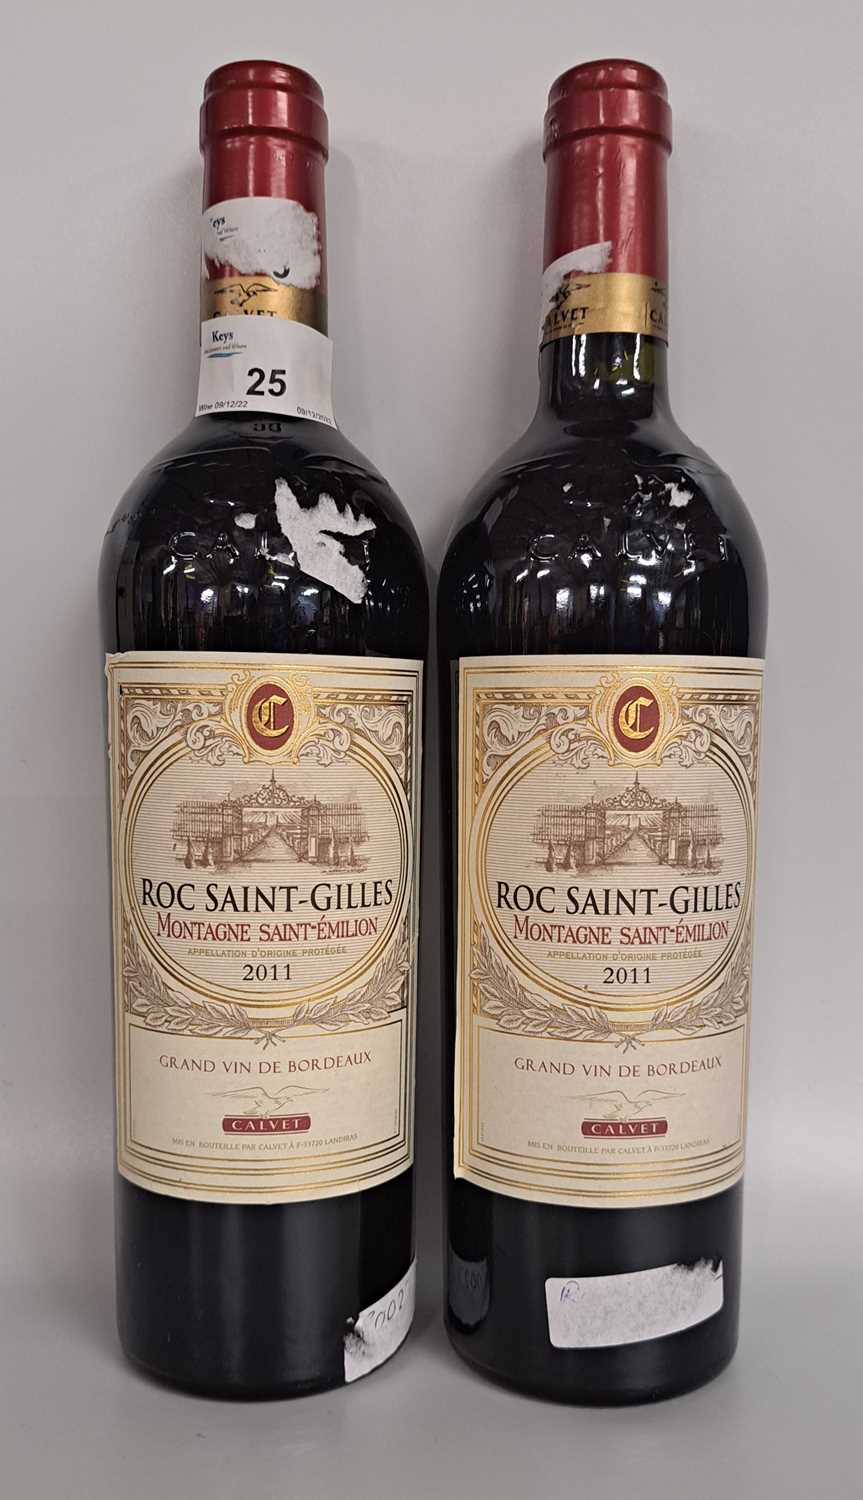 Two bottles Roc Saint-Gilles, Grand Vin De Bordeaux, Calvet 2011